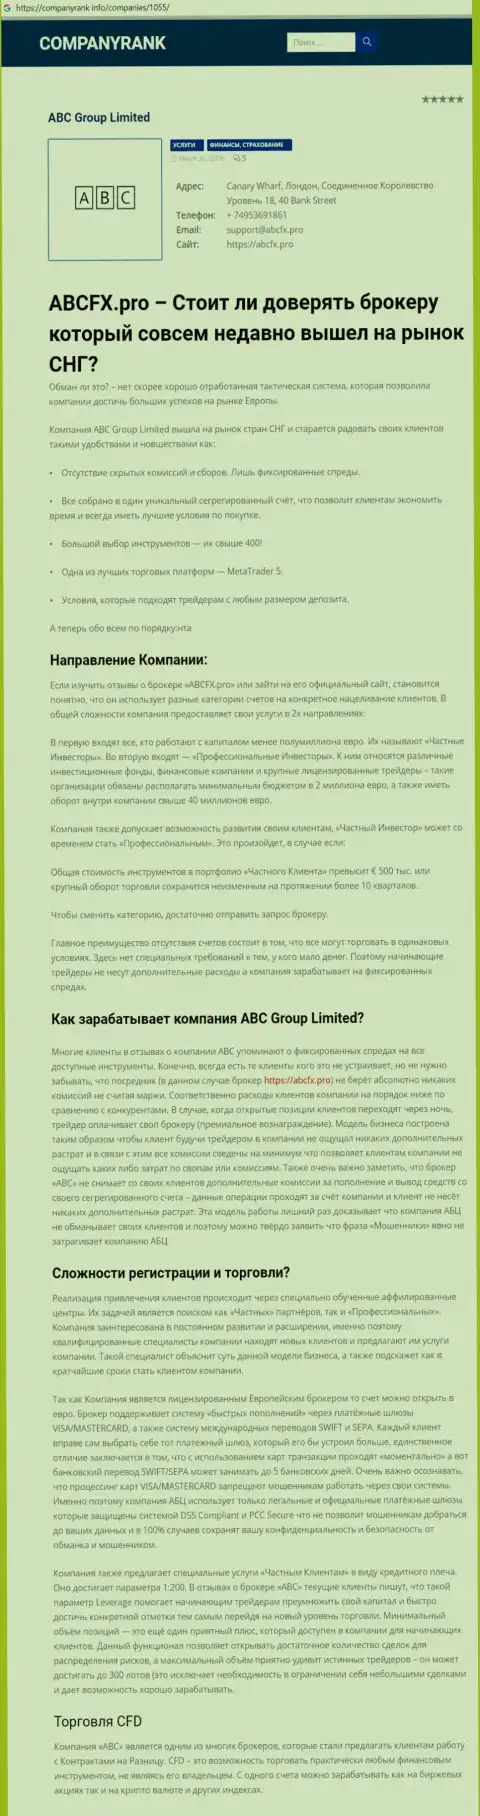 О ФОРЕКС дилинговом центре ABC FX на web-сайте CompanyRank Info